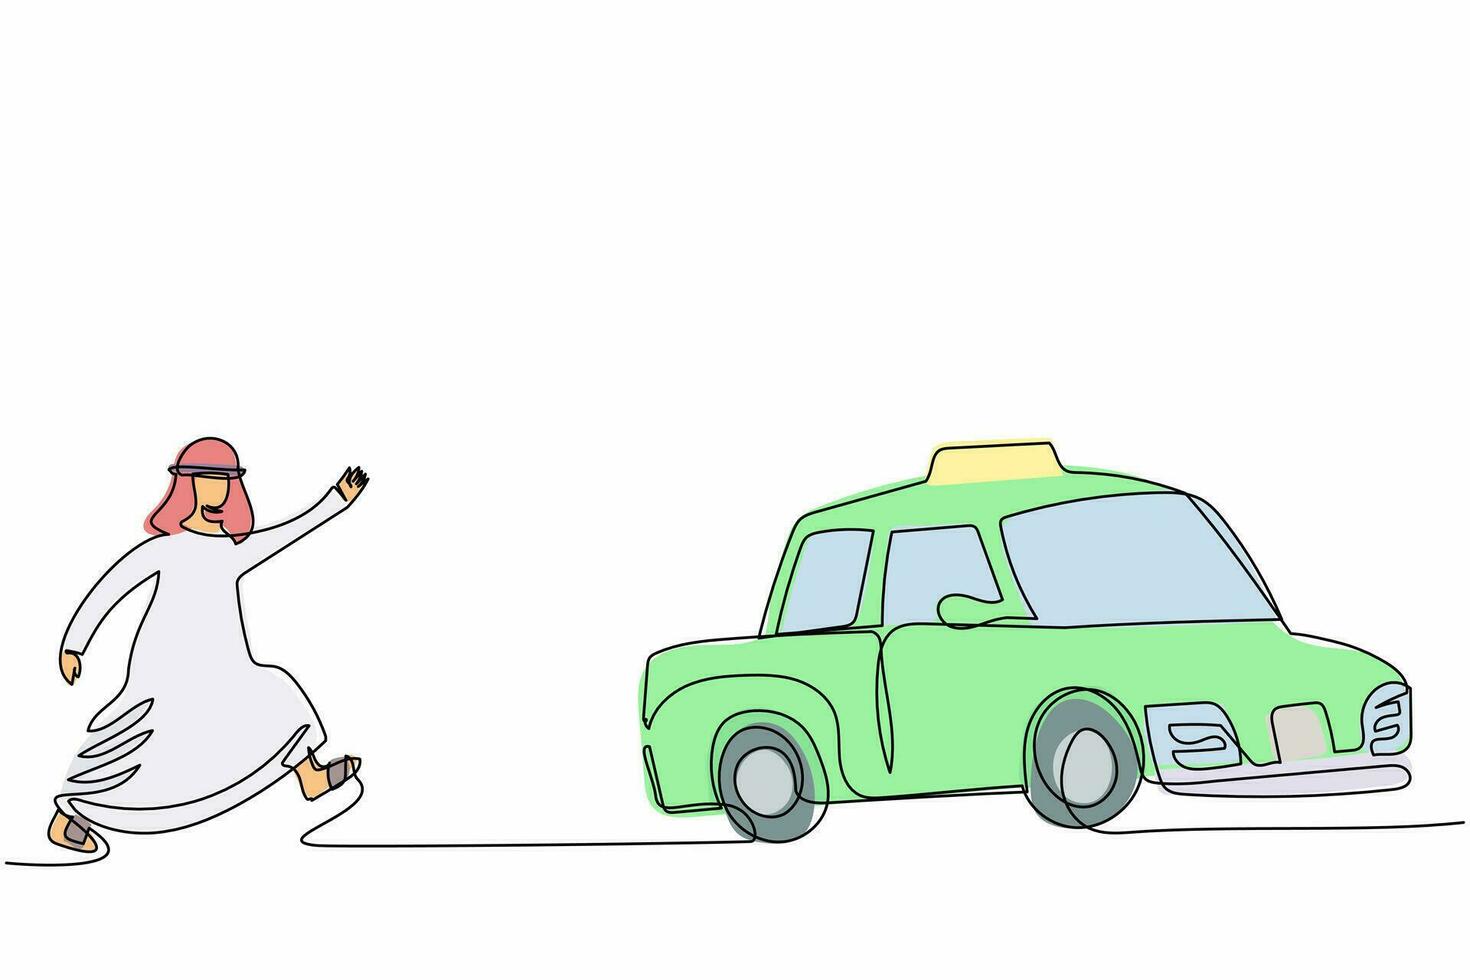 contínuo um desenho de linha empresário árabe correndo perseguindo táxi. gerente árabe com pressa correndo para pegar um carro, mova-se com muita pressa para pegar o transporte público. vetor de design de desenho de linha única